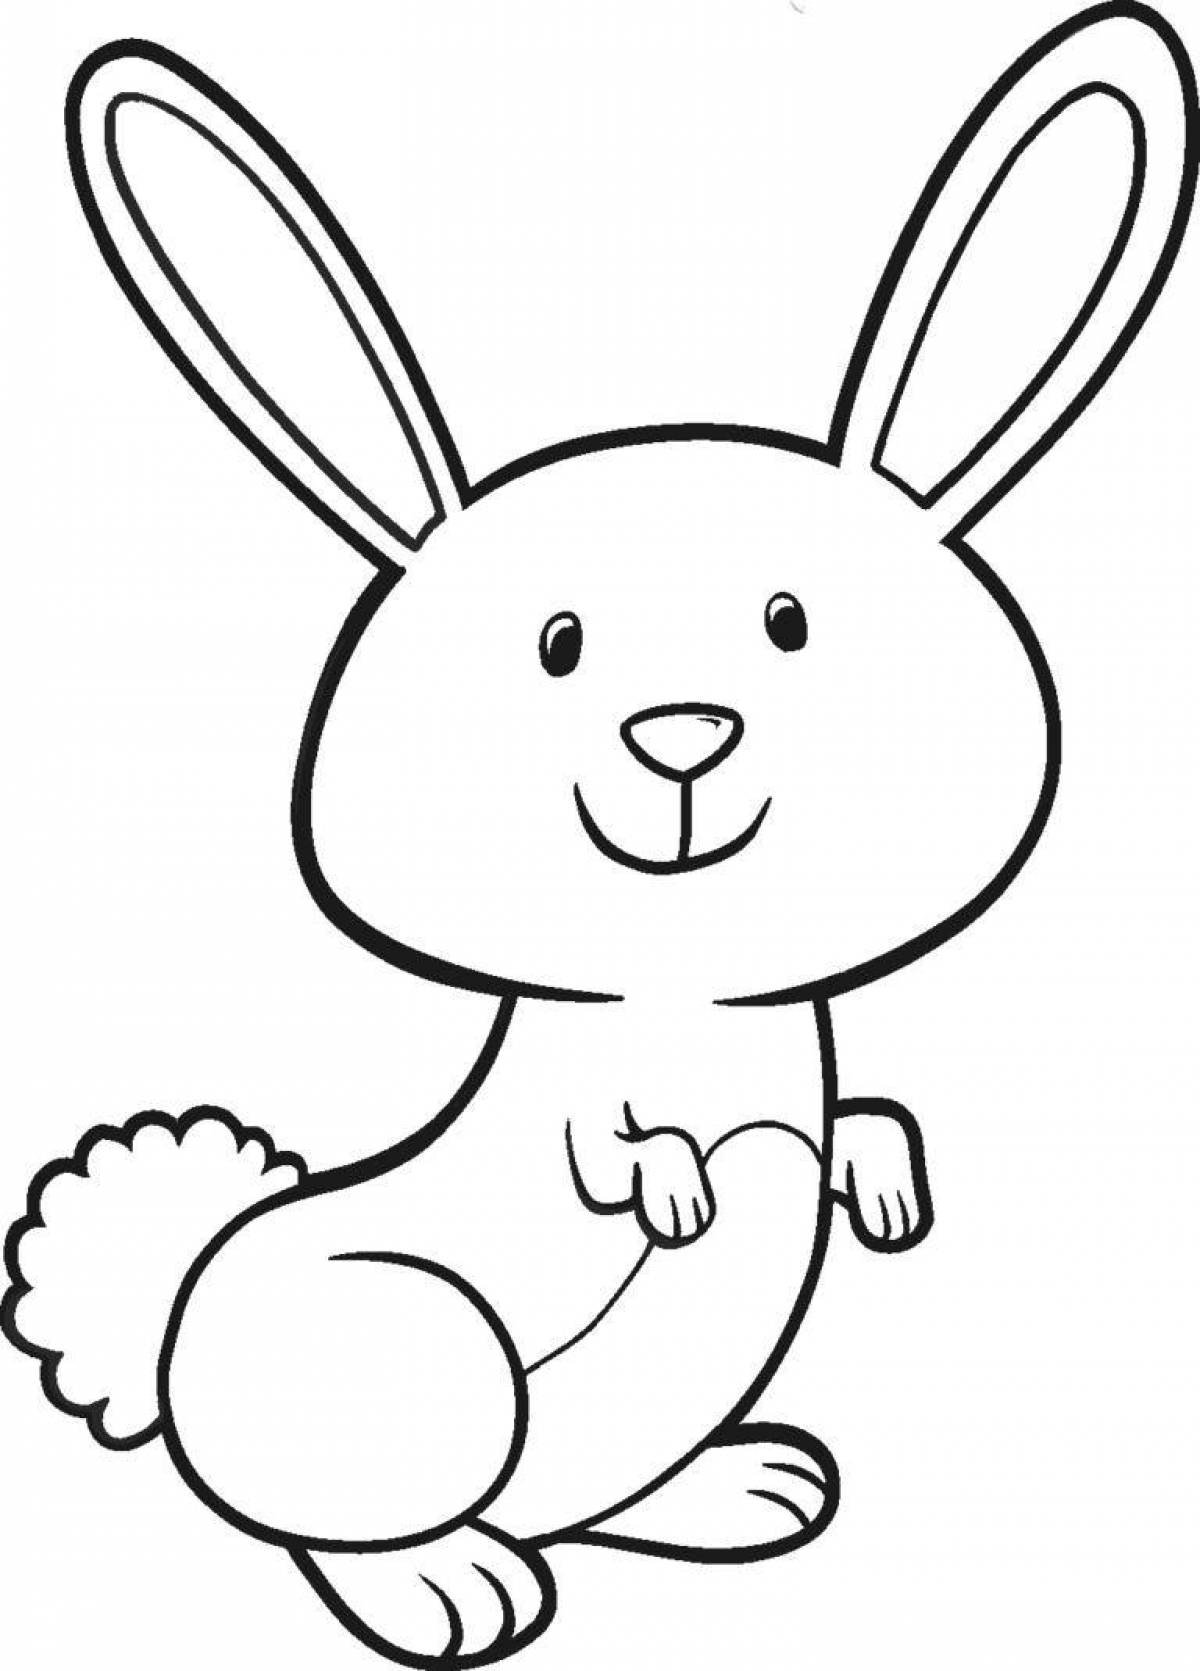 Радостная раскраска рисунок зайца для детей